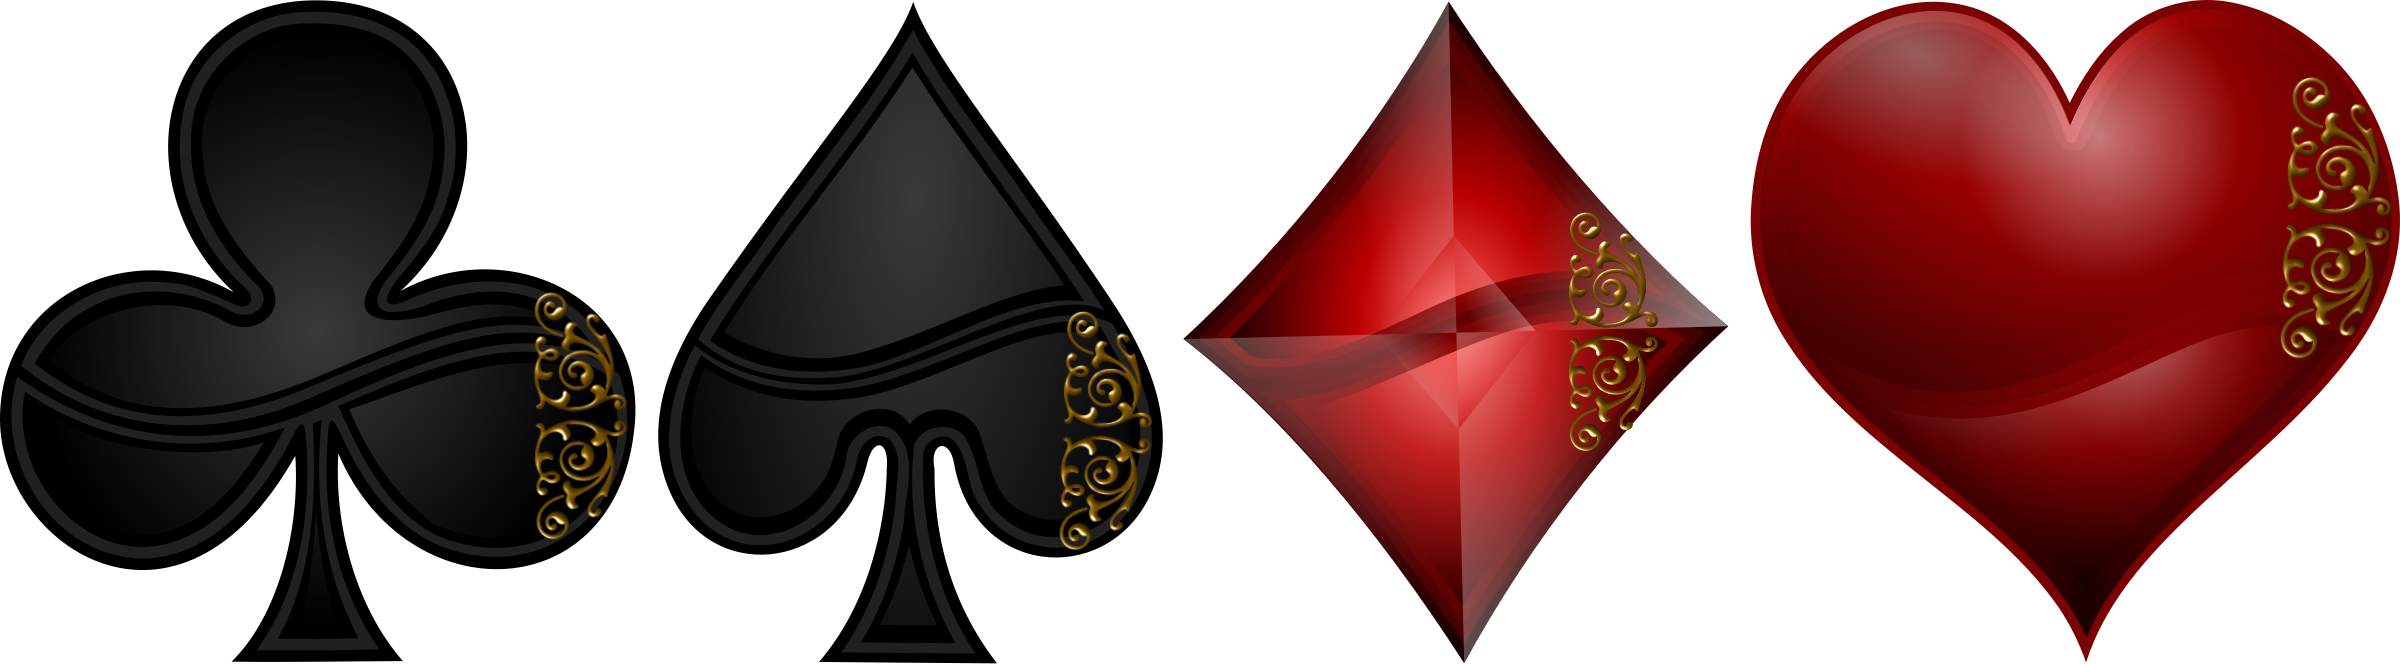 Symbols. Poker clipart card symbol